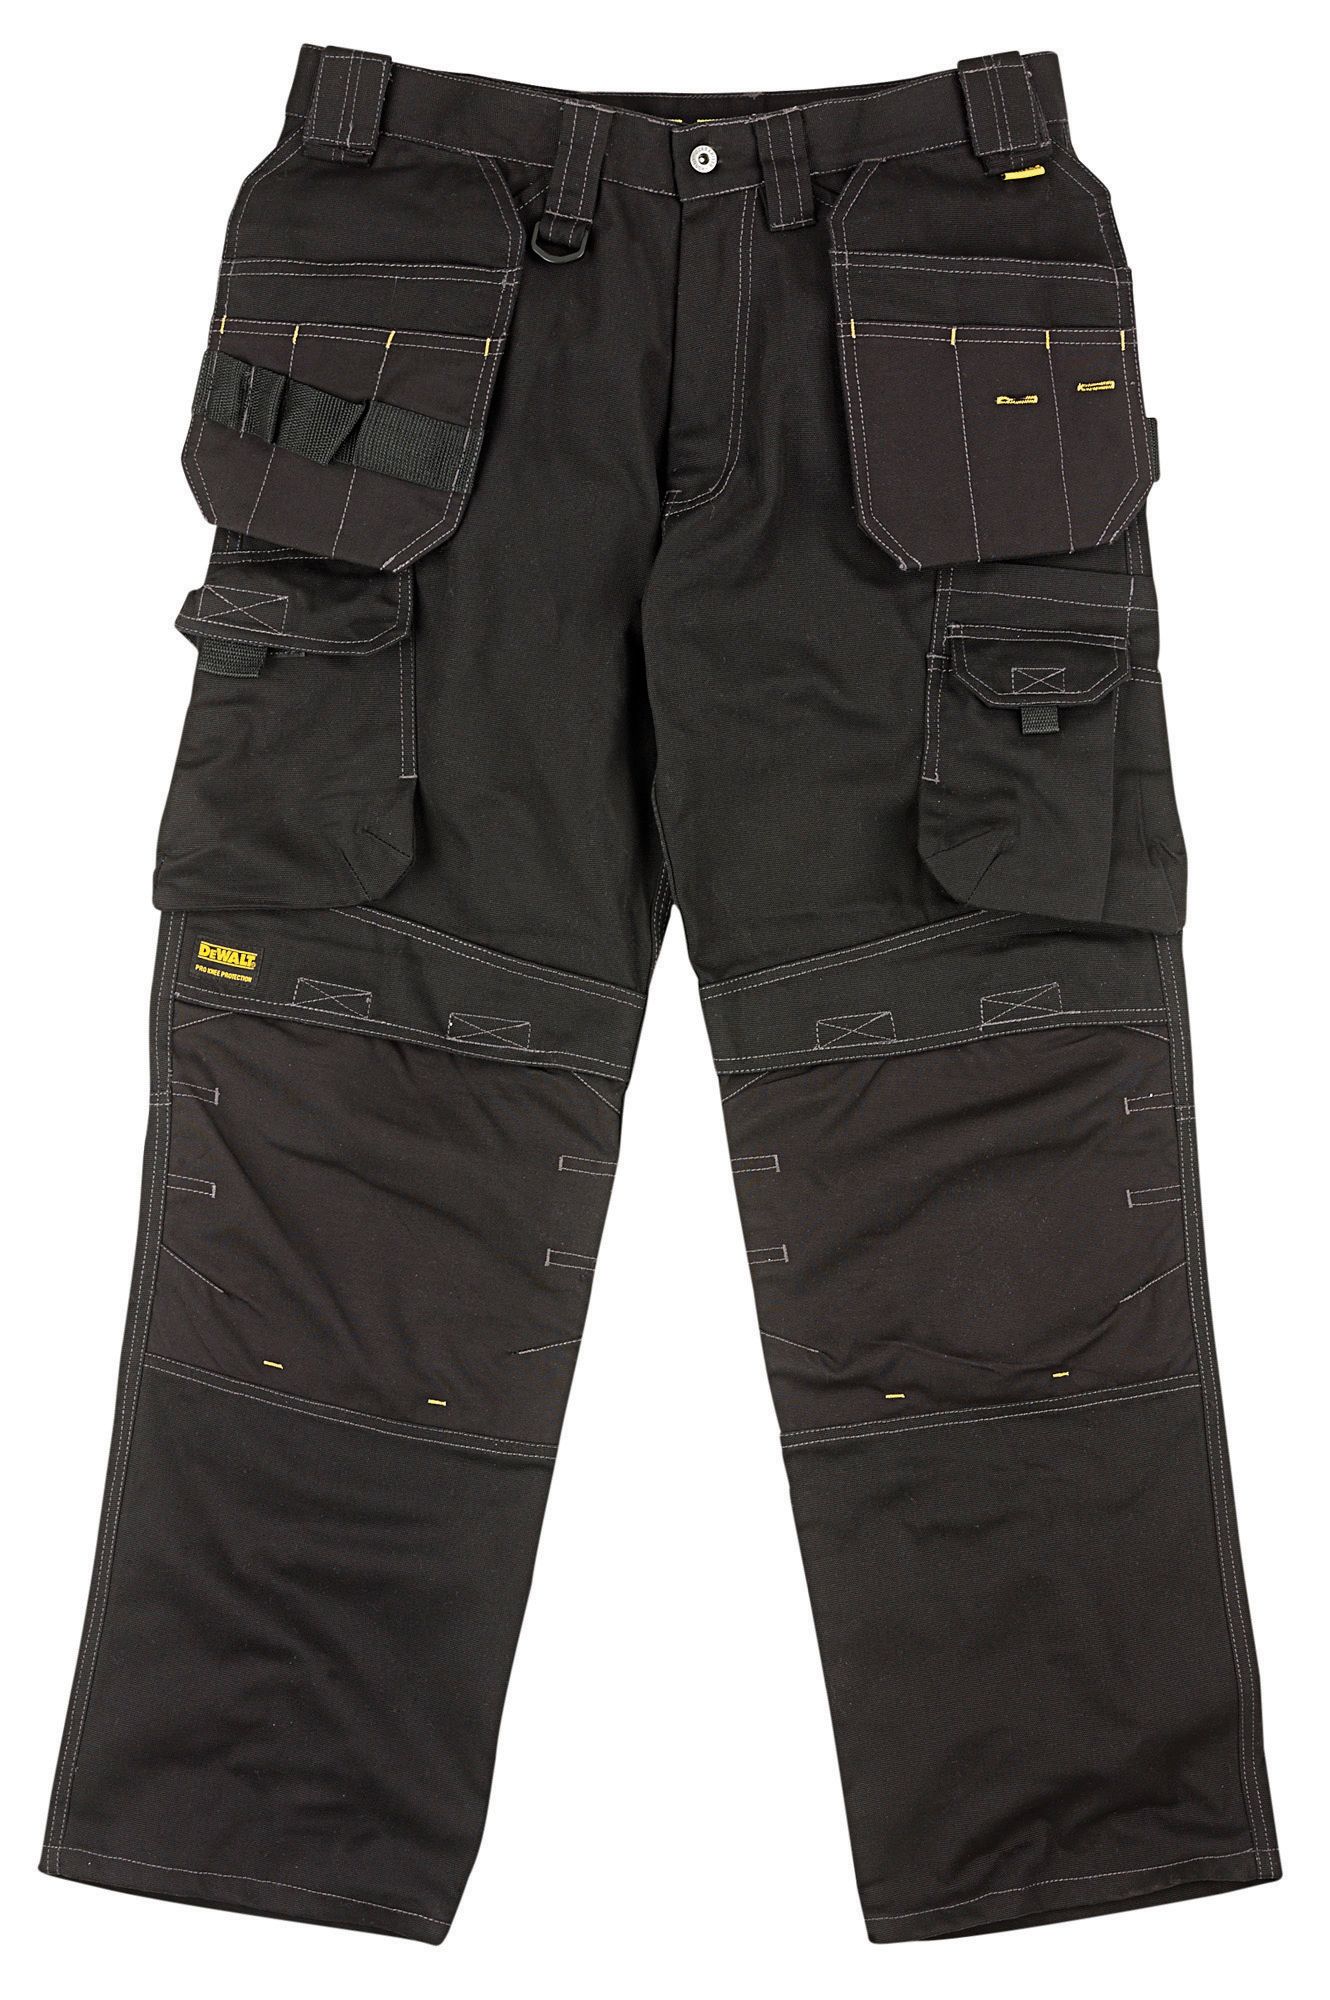 DeWalt Pro Tradesman Black Trousers, W38" L31"